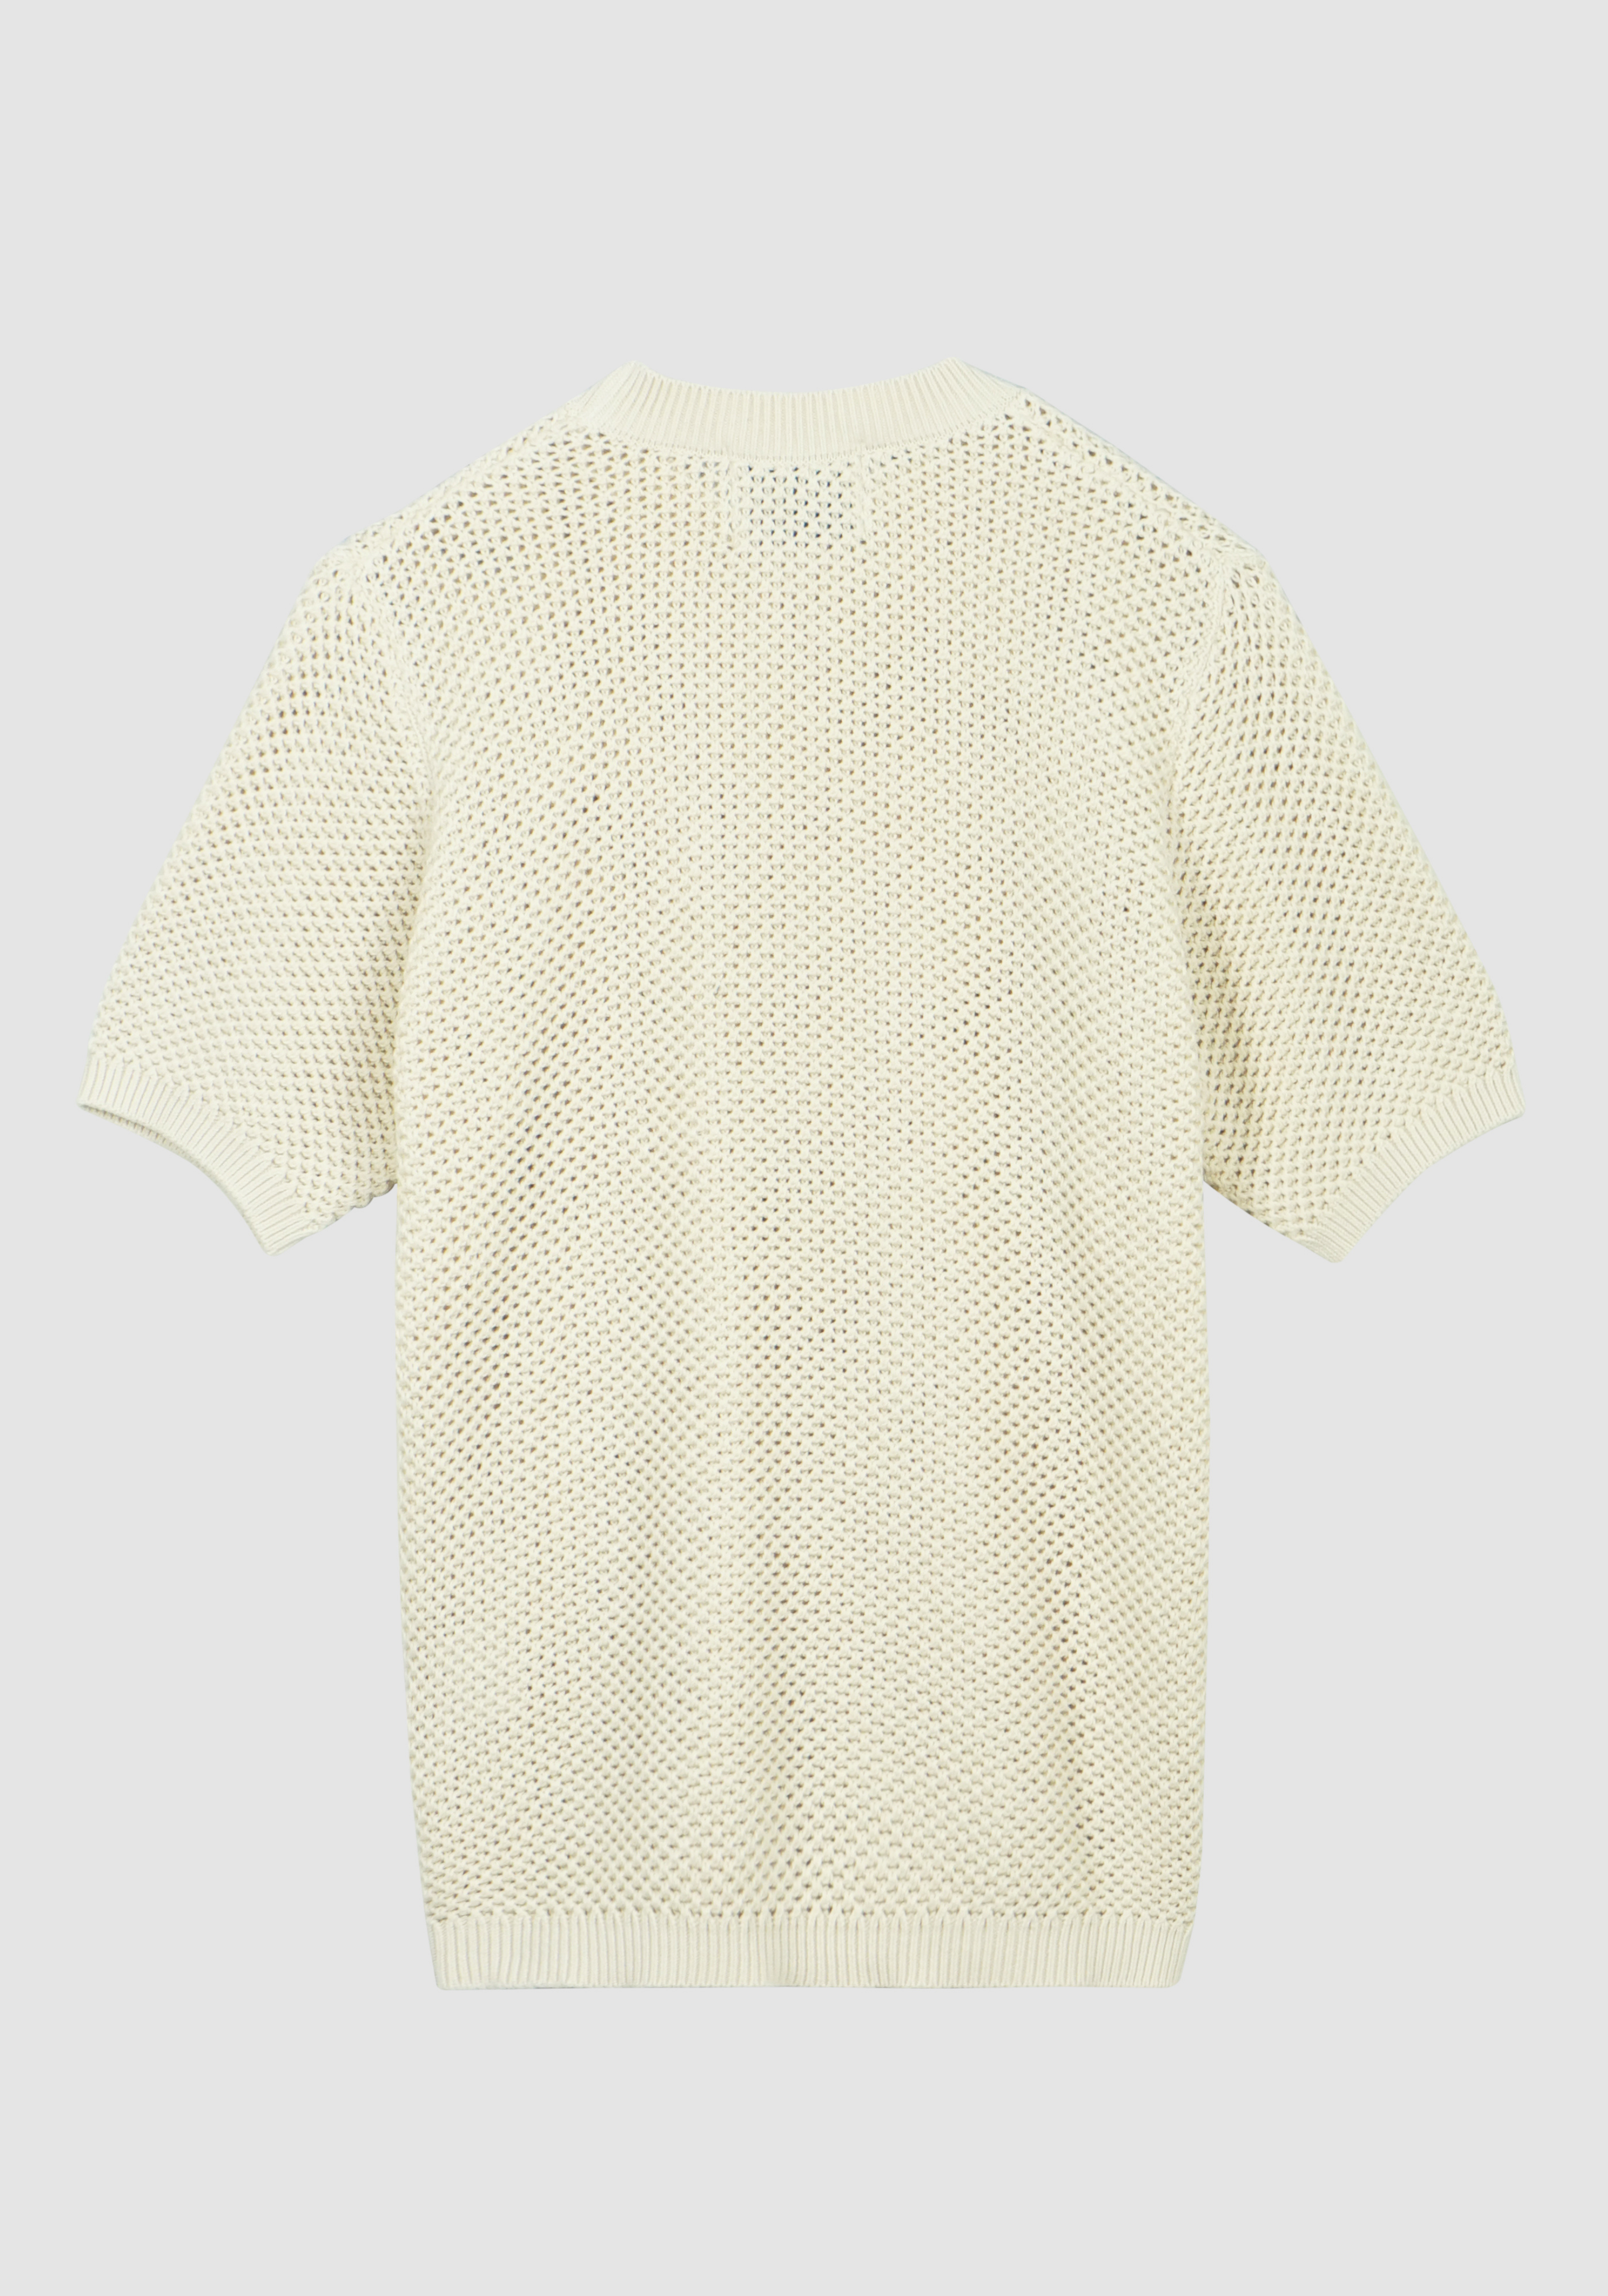 Kiewic knit t-shirt